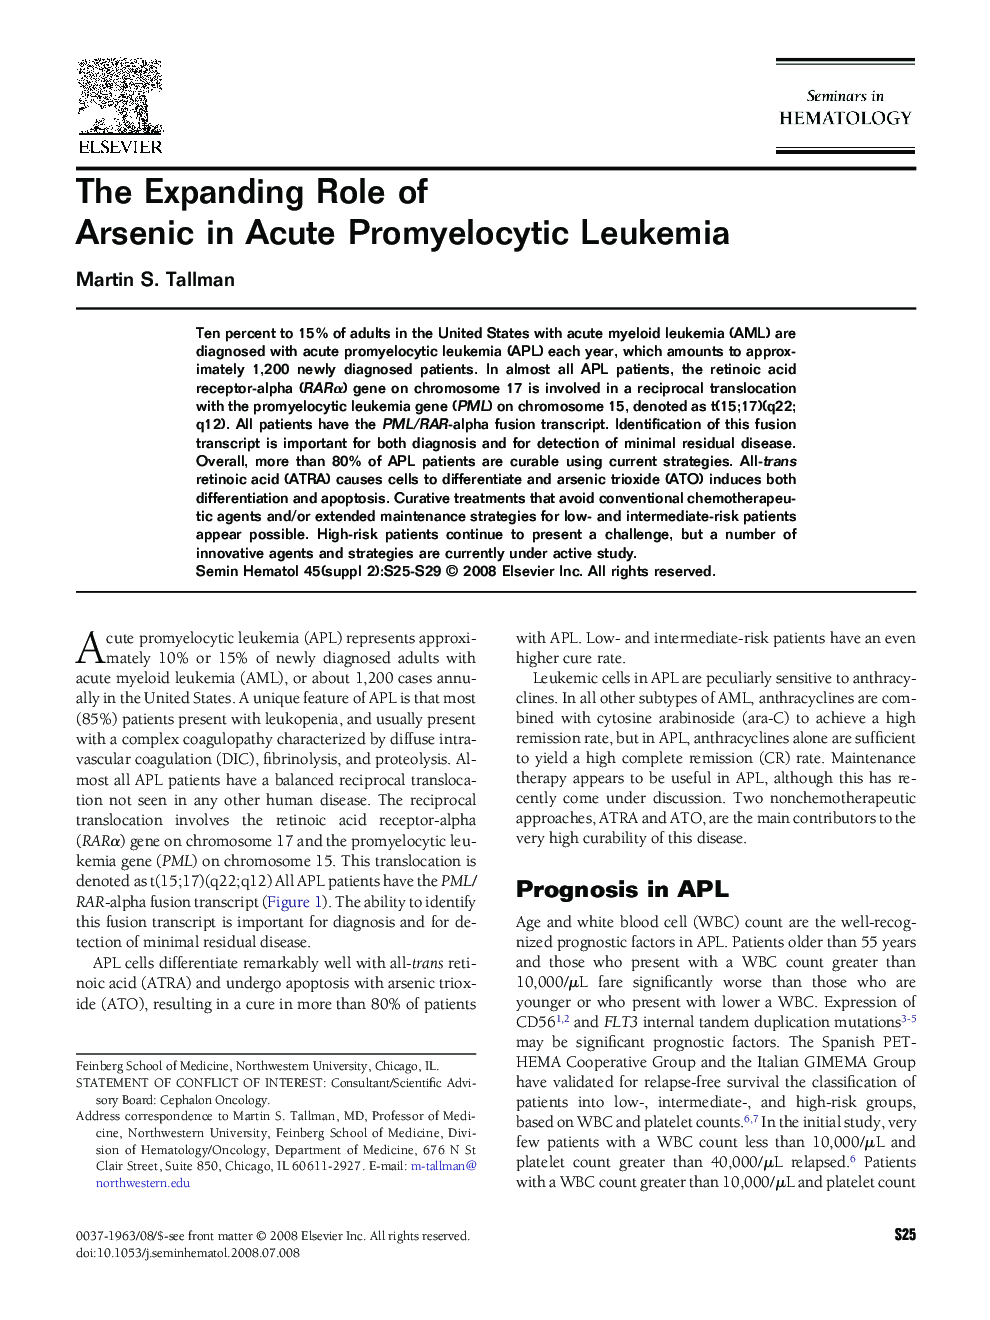 The Expanding Role of Arsenic in Acute Promyelocytic Leukemia 